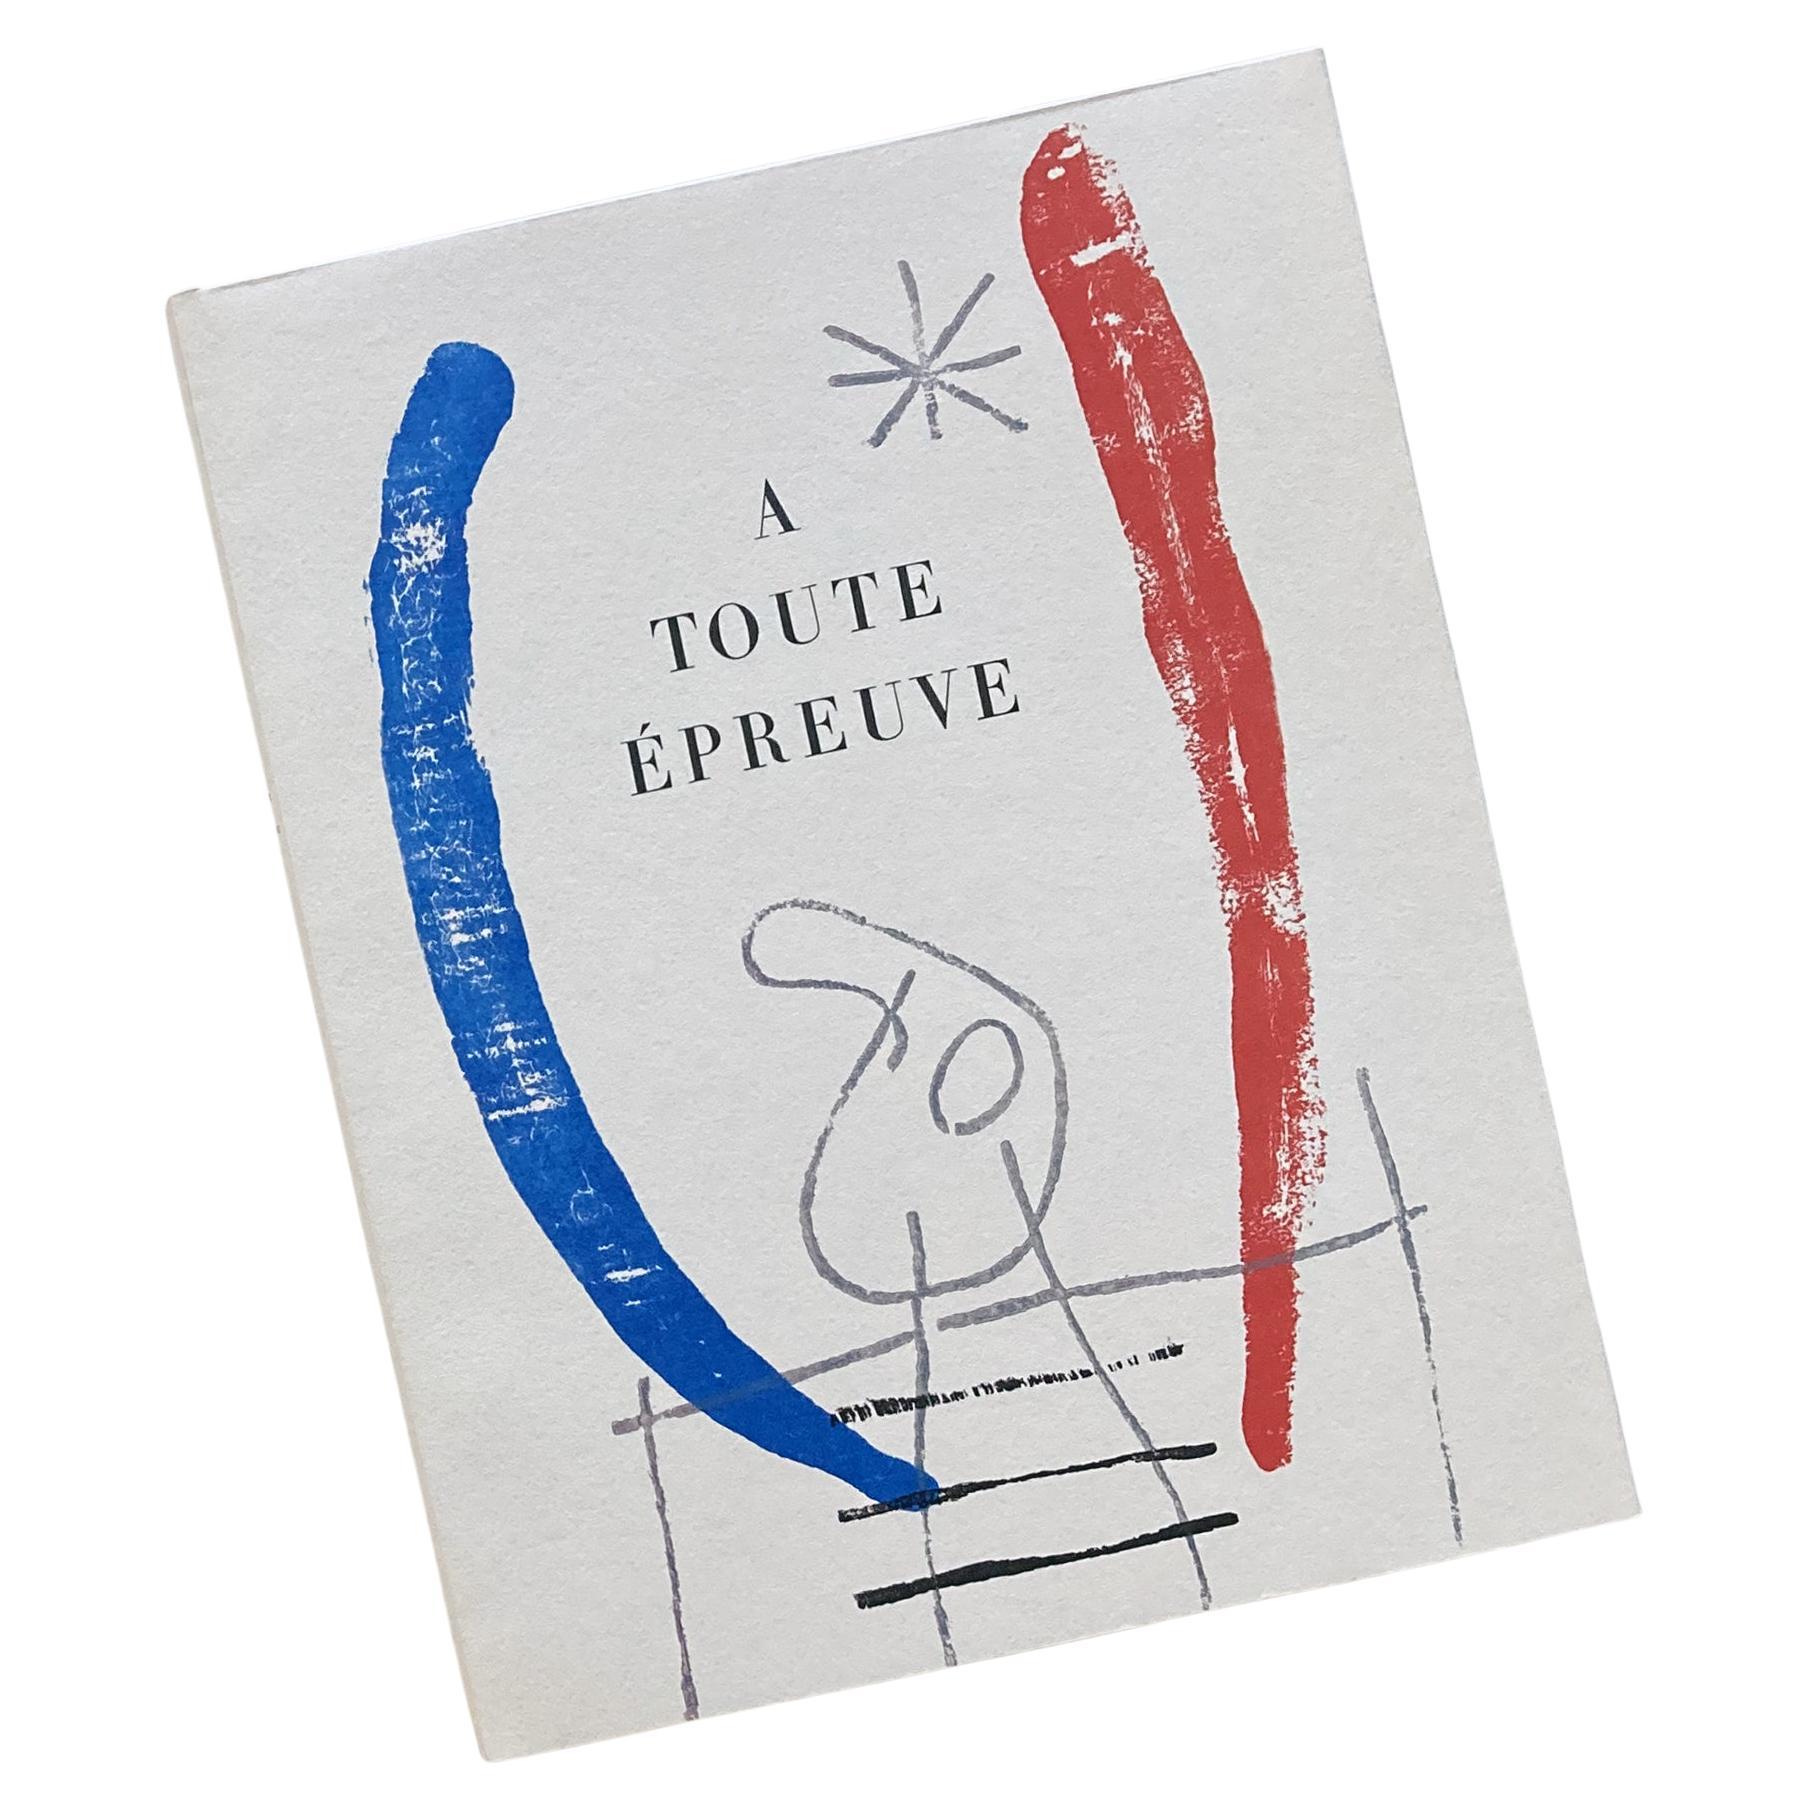 Joan Miró, A Toute Épreuve, by Paul Éluard, republished 1984, 1st edition For Sale